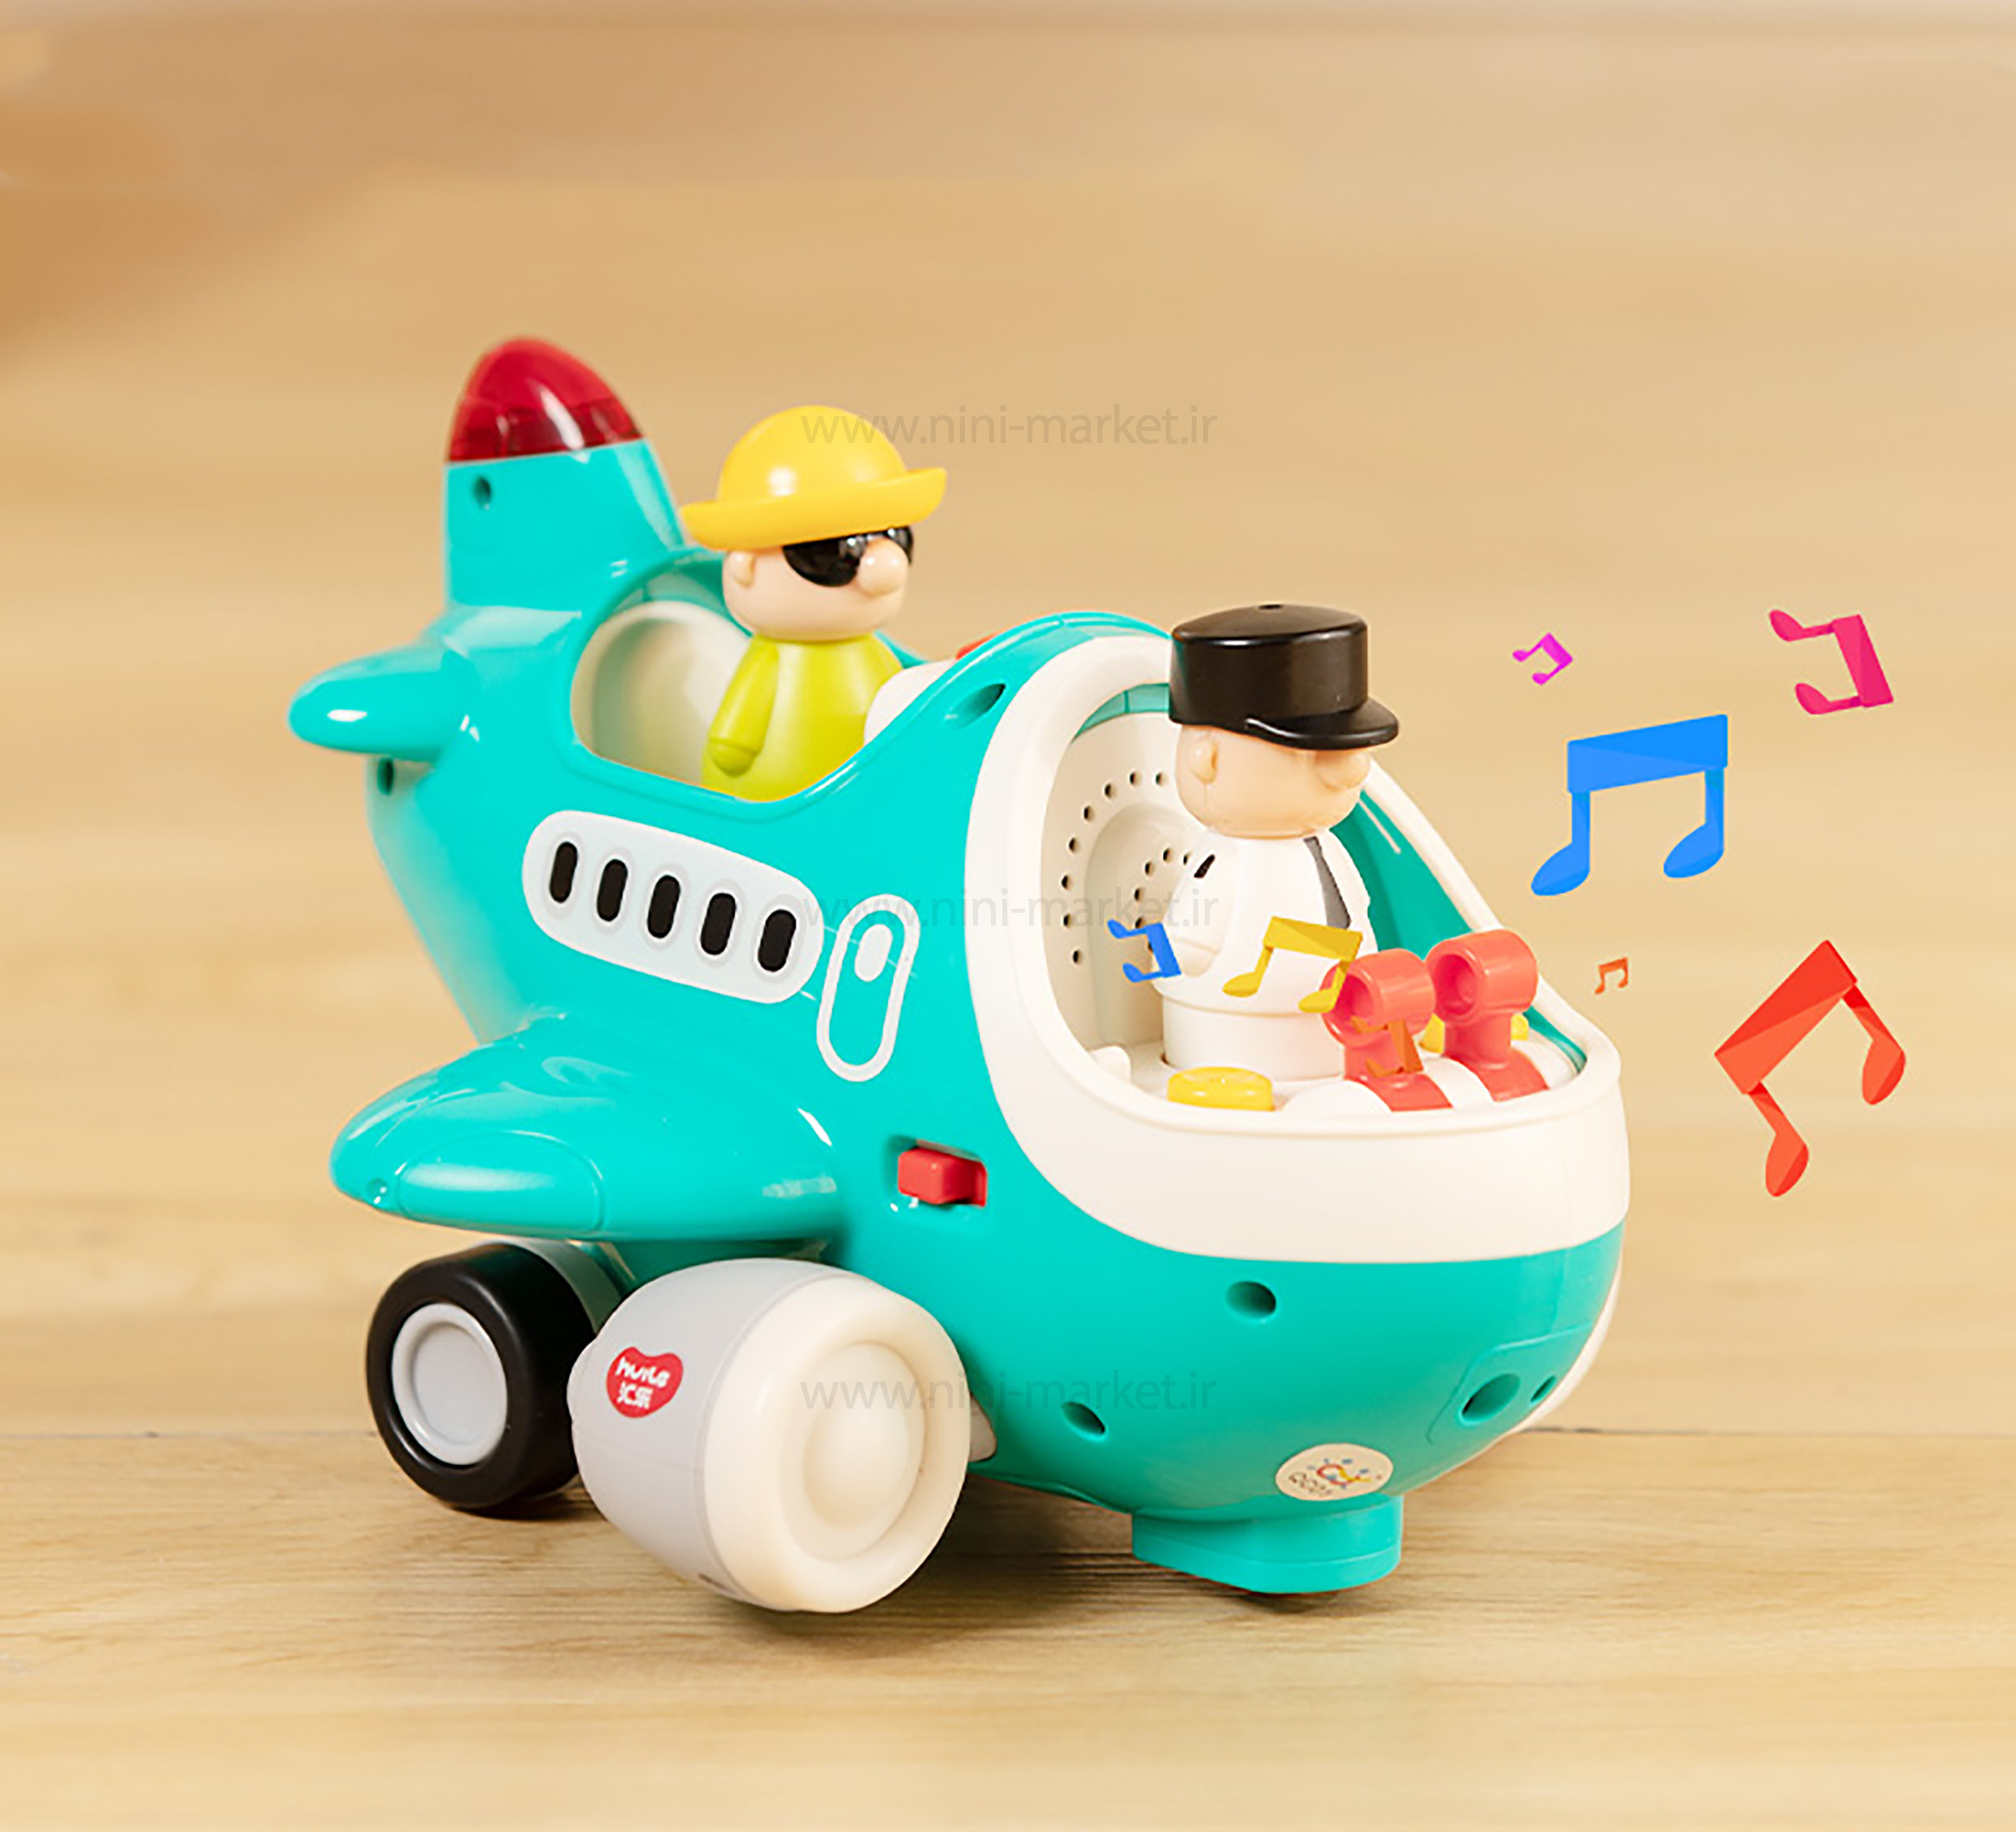 ویژگی هواپیما کنترلی موزیکال هولی تویز Hulie toys